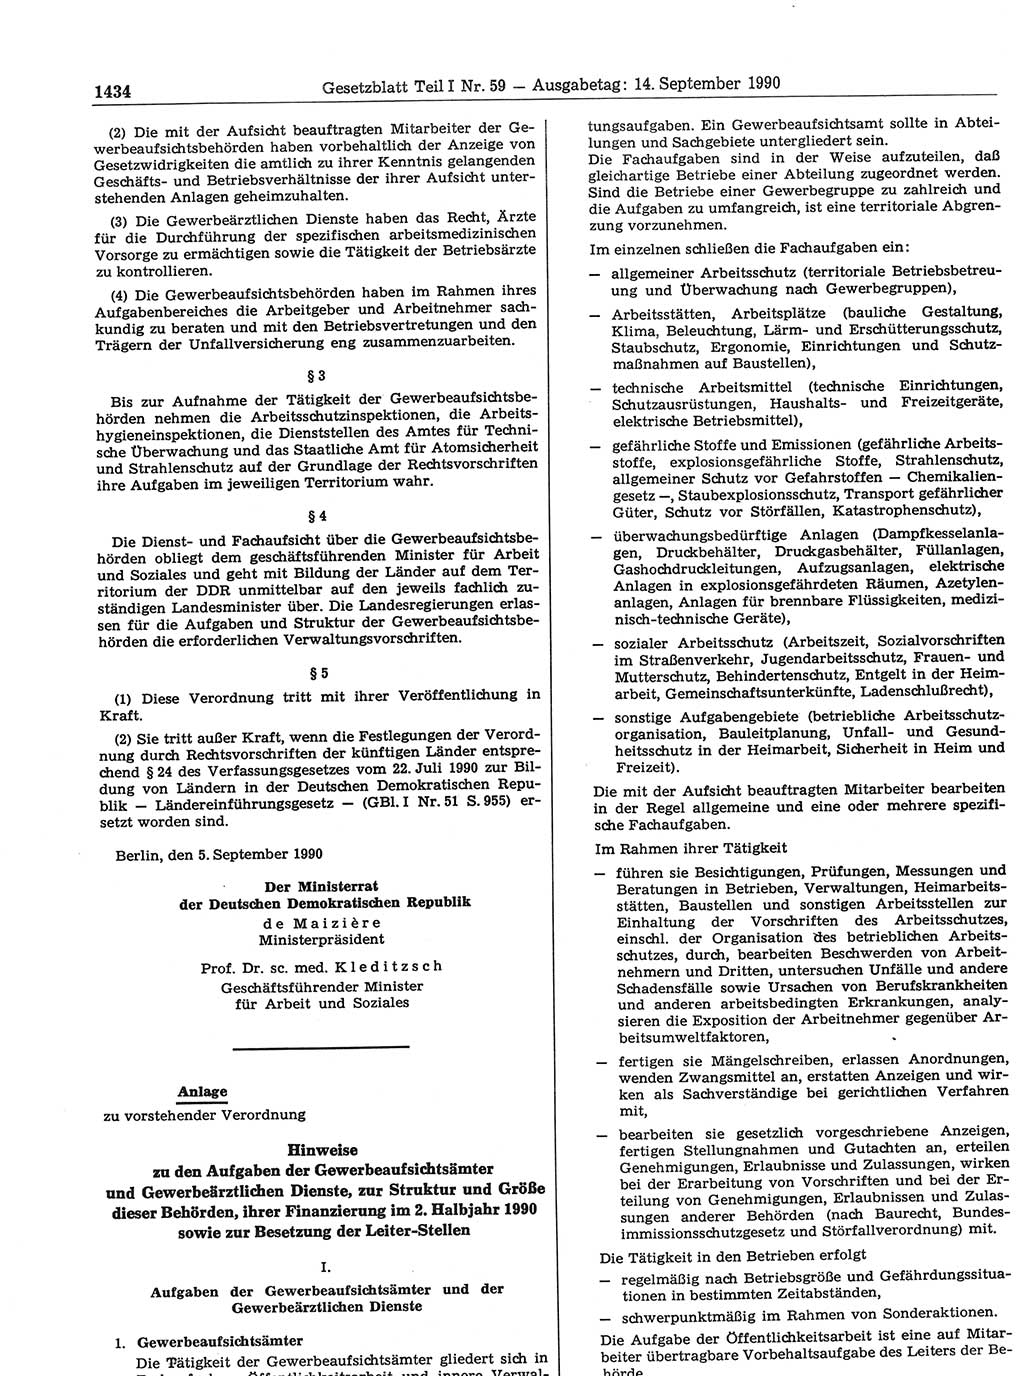 Gesetzblatt (GBl.) der Deutschen Demokratischen Republik (DDR) Teil Ⅰ 1990, Seite 1434 (GBl. DDR Ⅰ 1990, S. 1434)